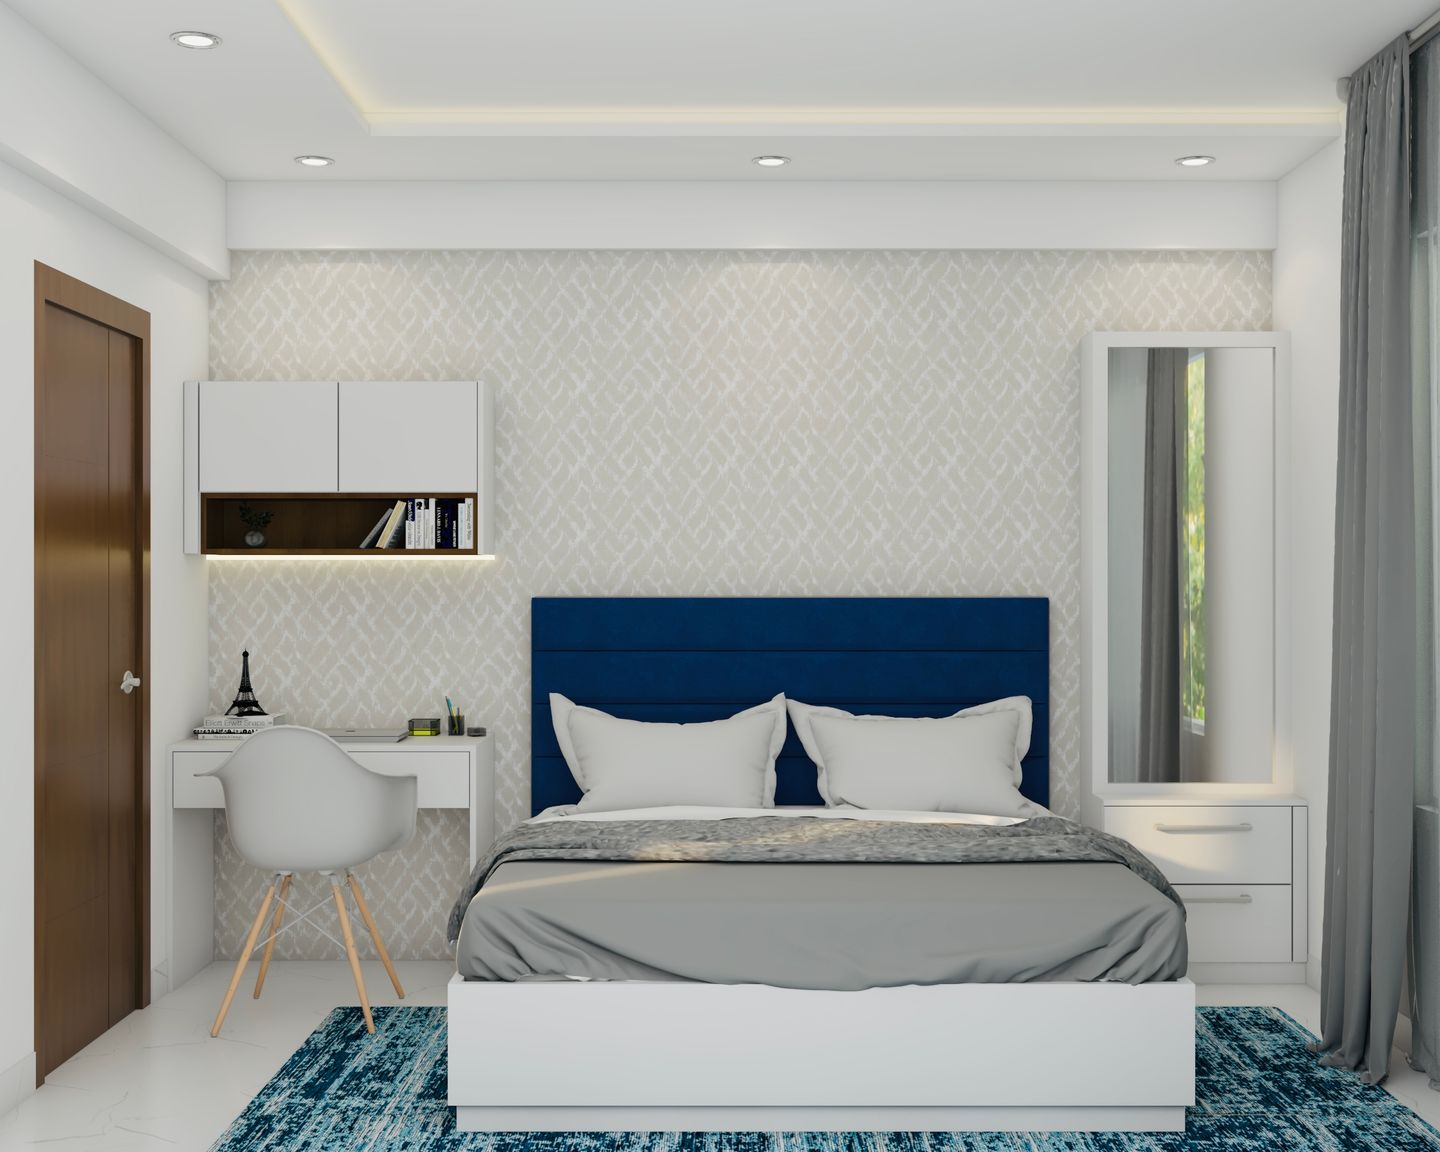 Contemporary Master Bedroom Design Idea - Livspace